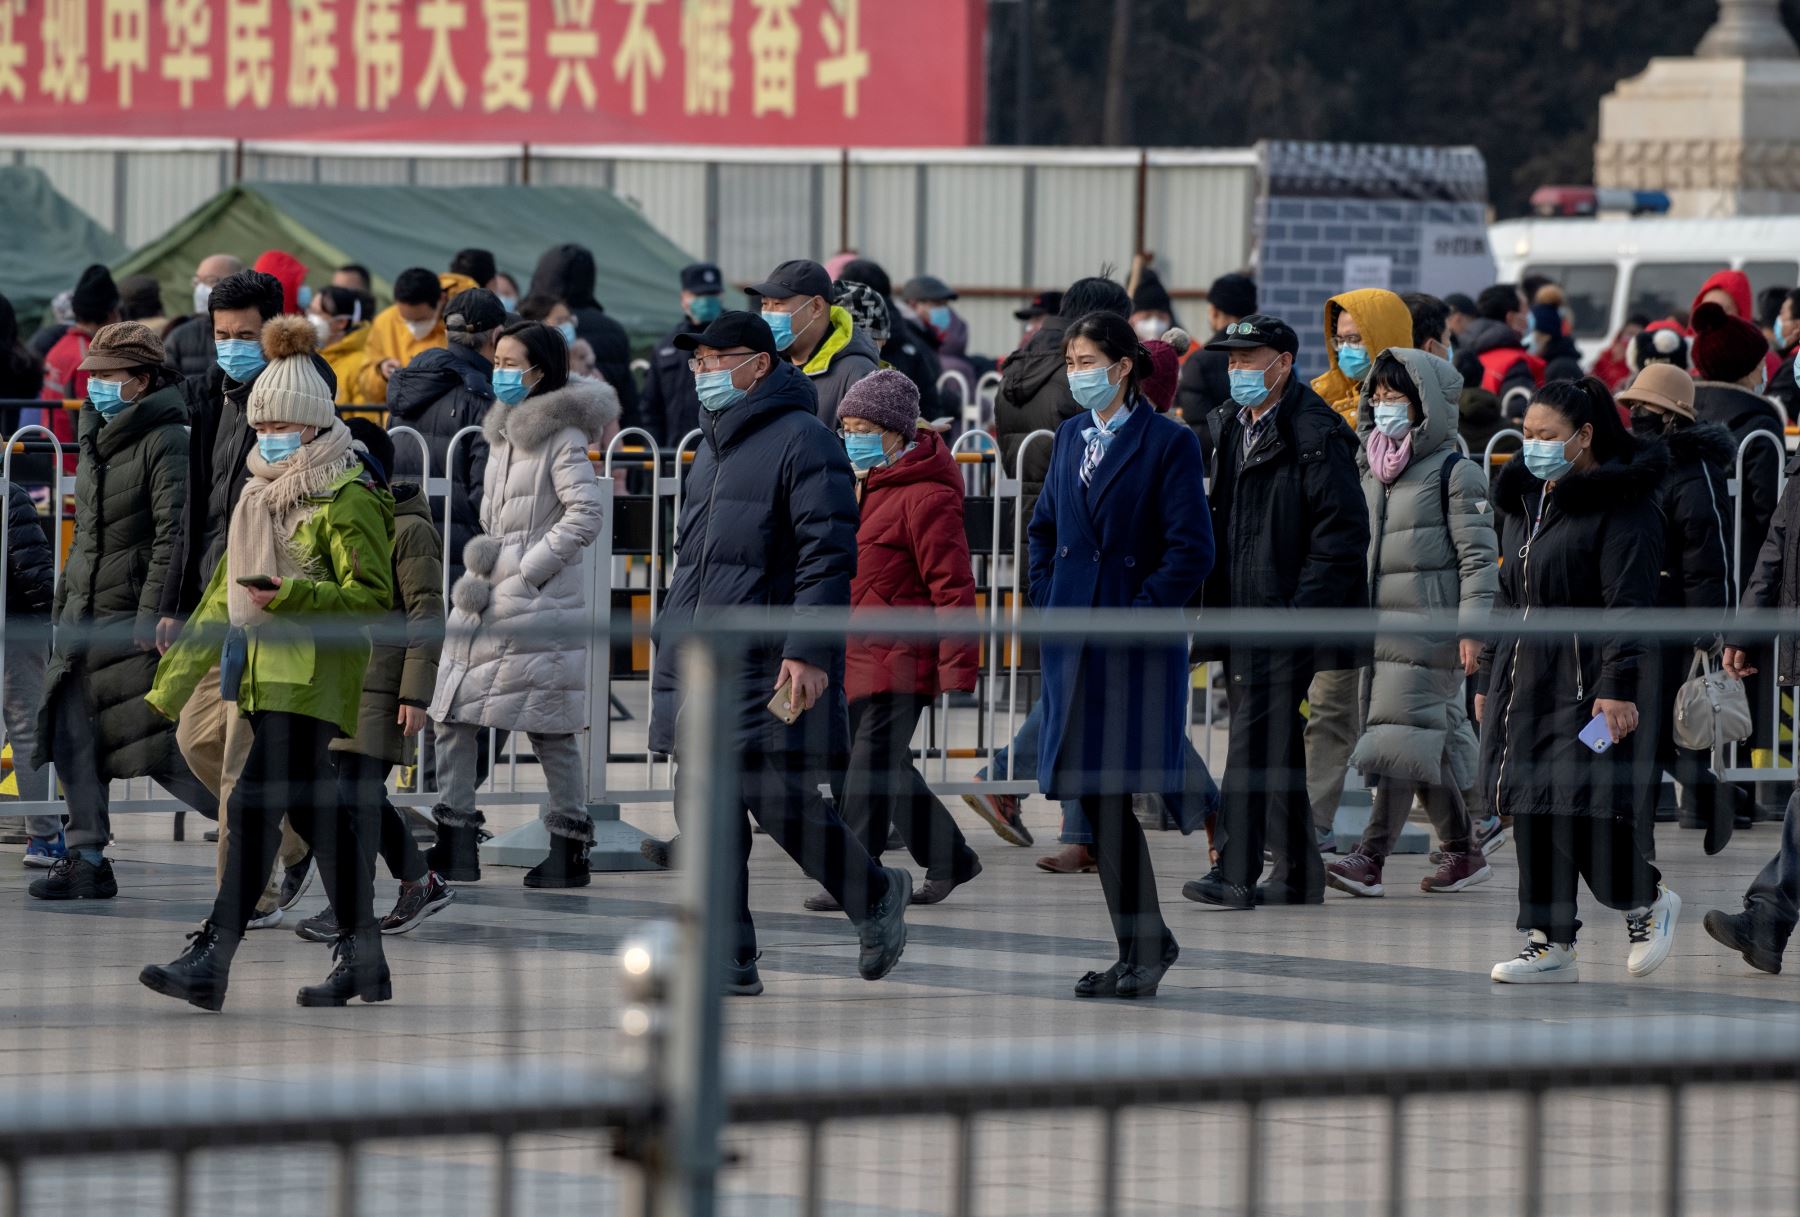 Shanghái registra cero contagios por primera vez desde el brote de covid-19